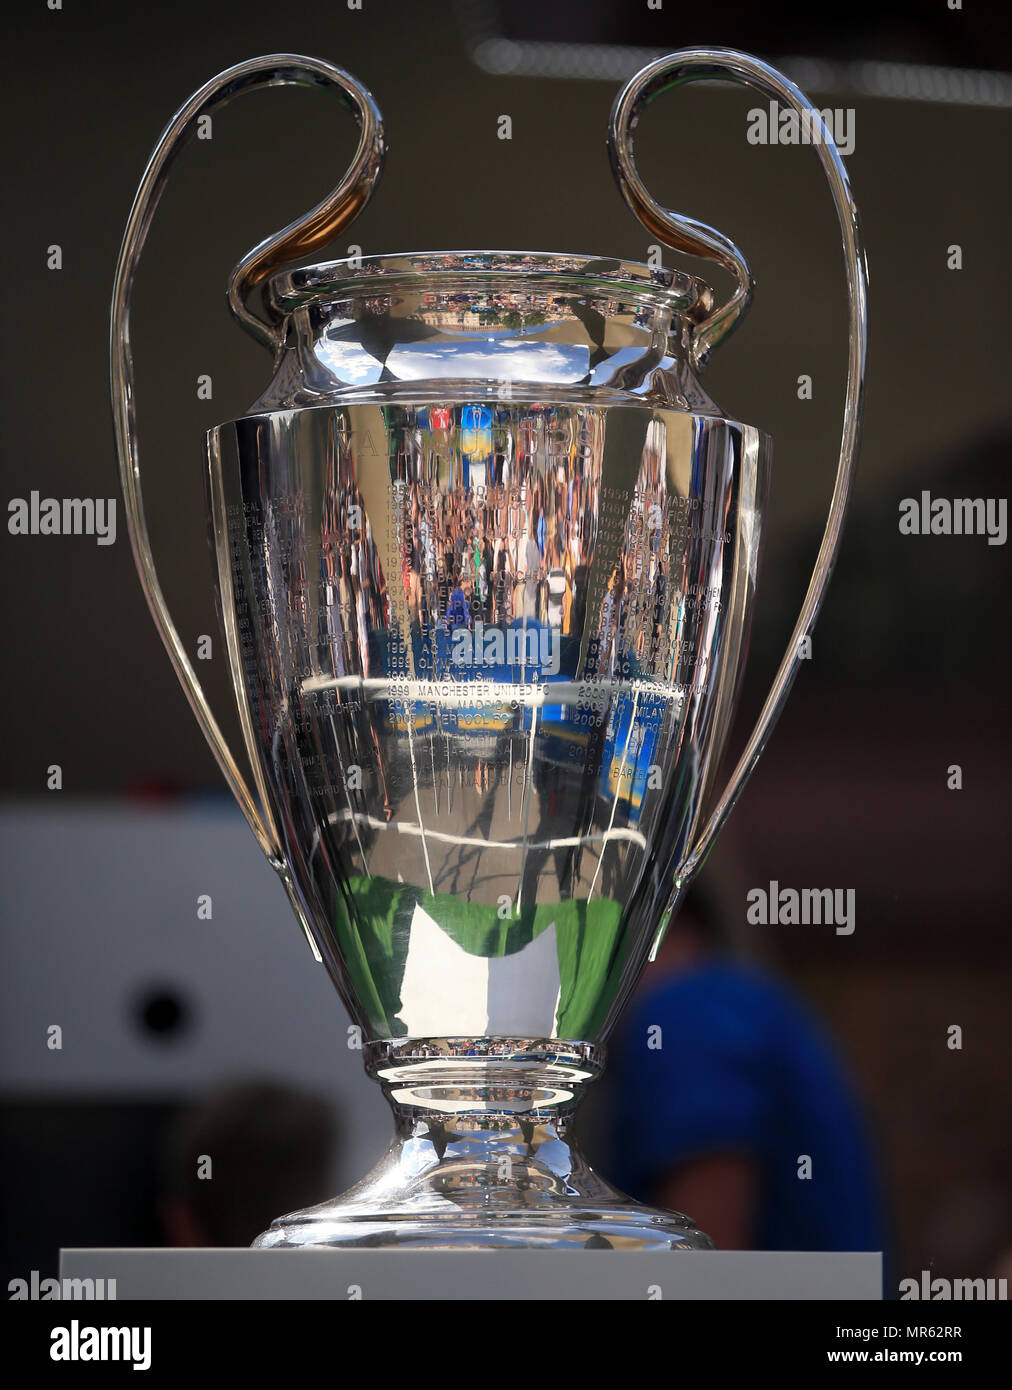 Trofeo de la UEFA Champions League en la pantalla en Kiev, donde el Liverpool jugará el Real Madrid la final de la UEFA Champions League por la noche Fotografía de